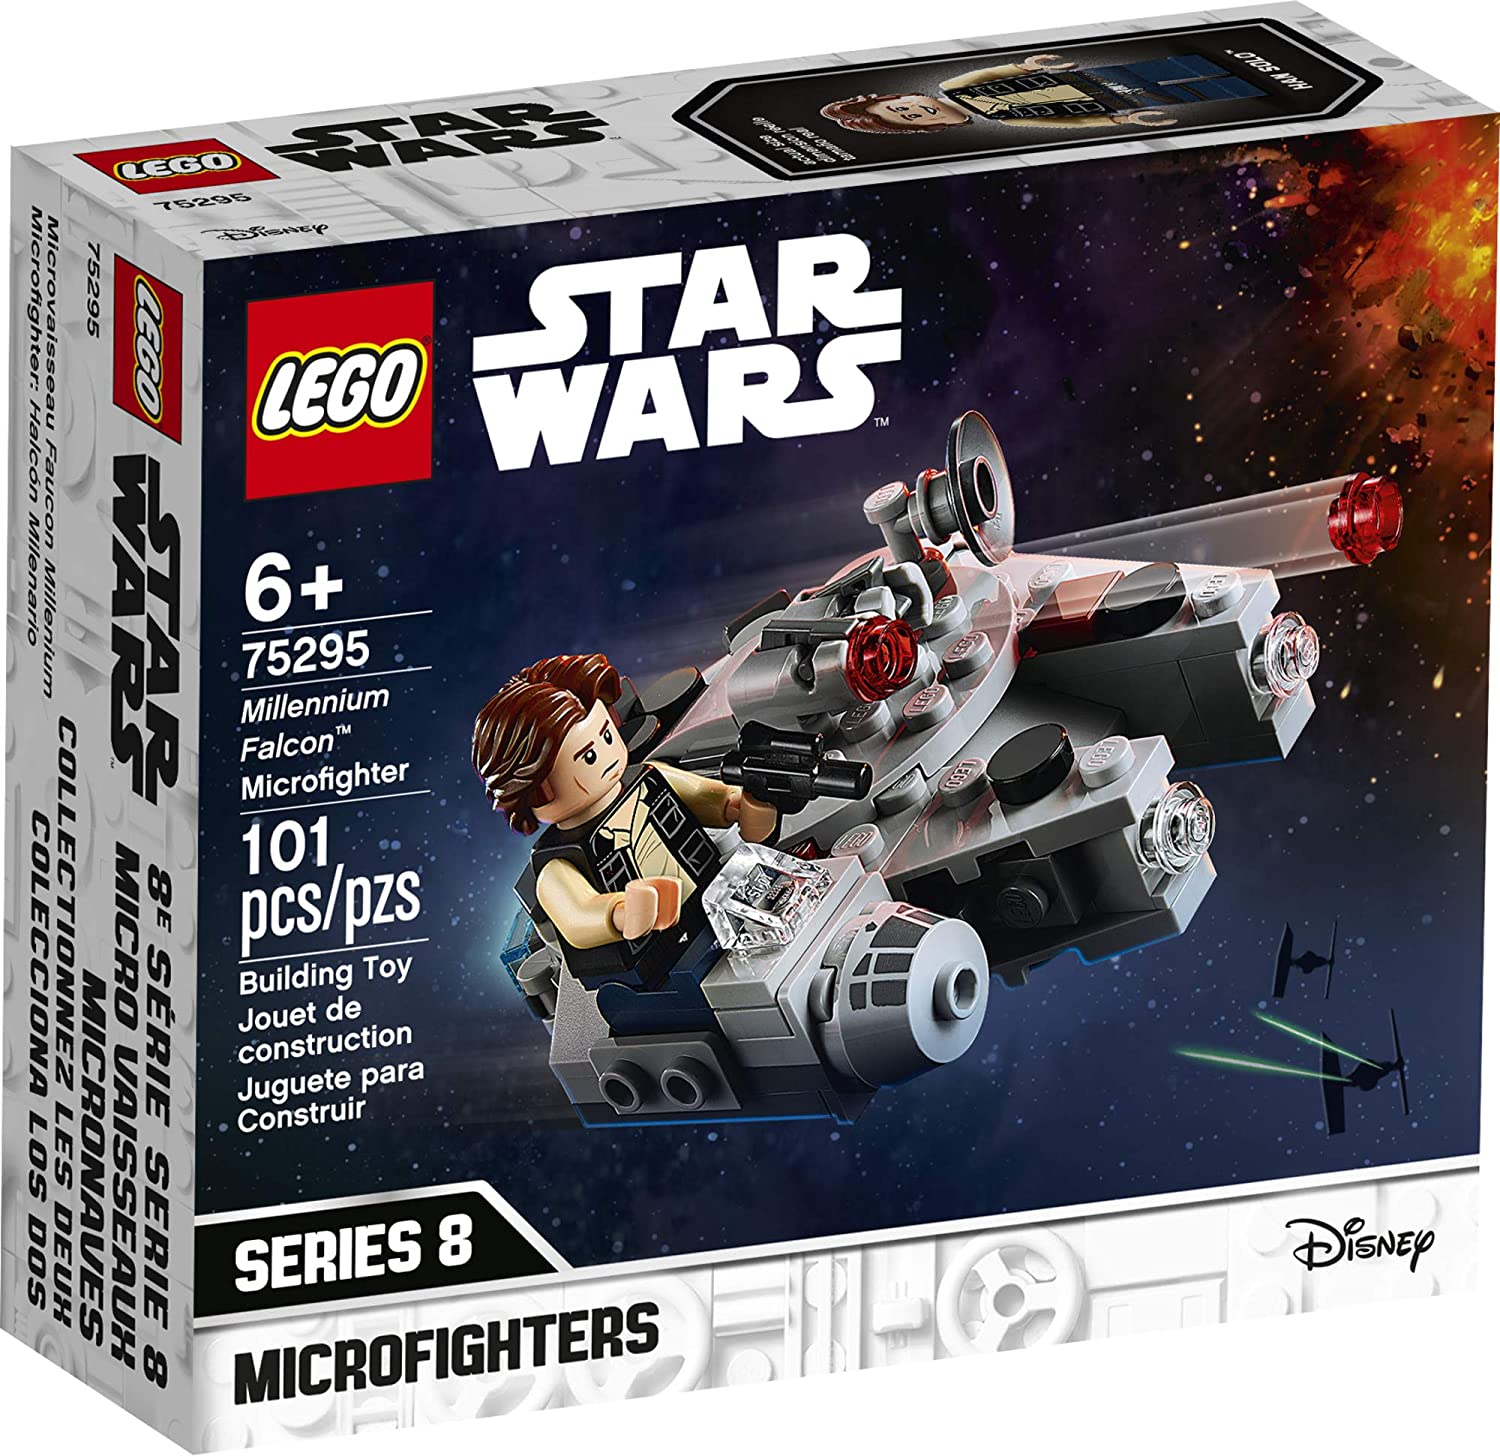 LEGO Millennium Falcon Microfighter 75295